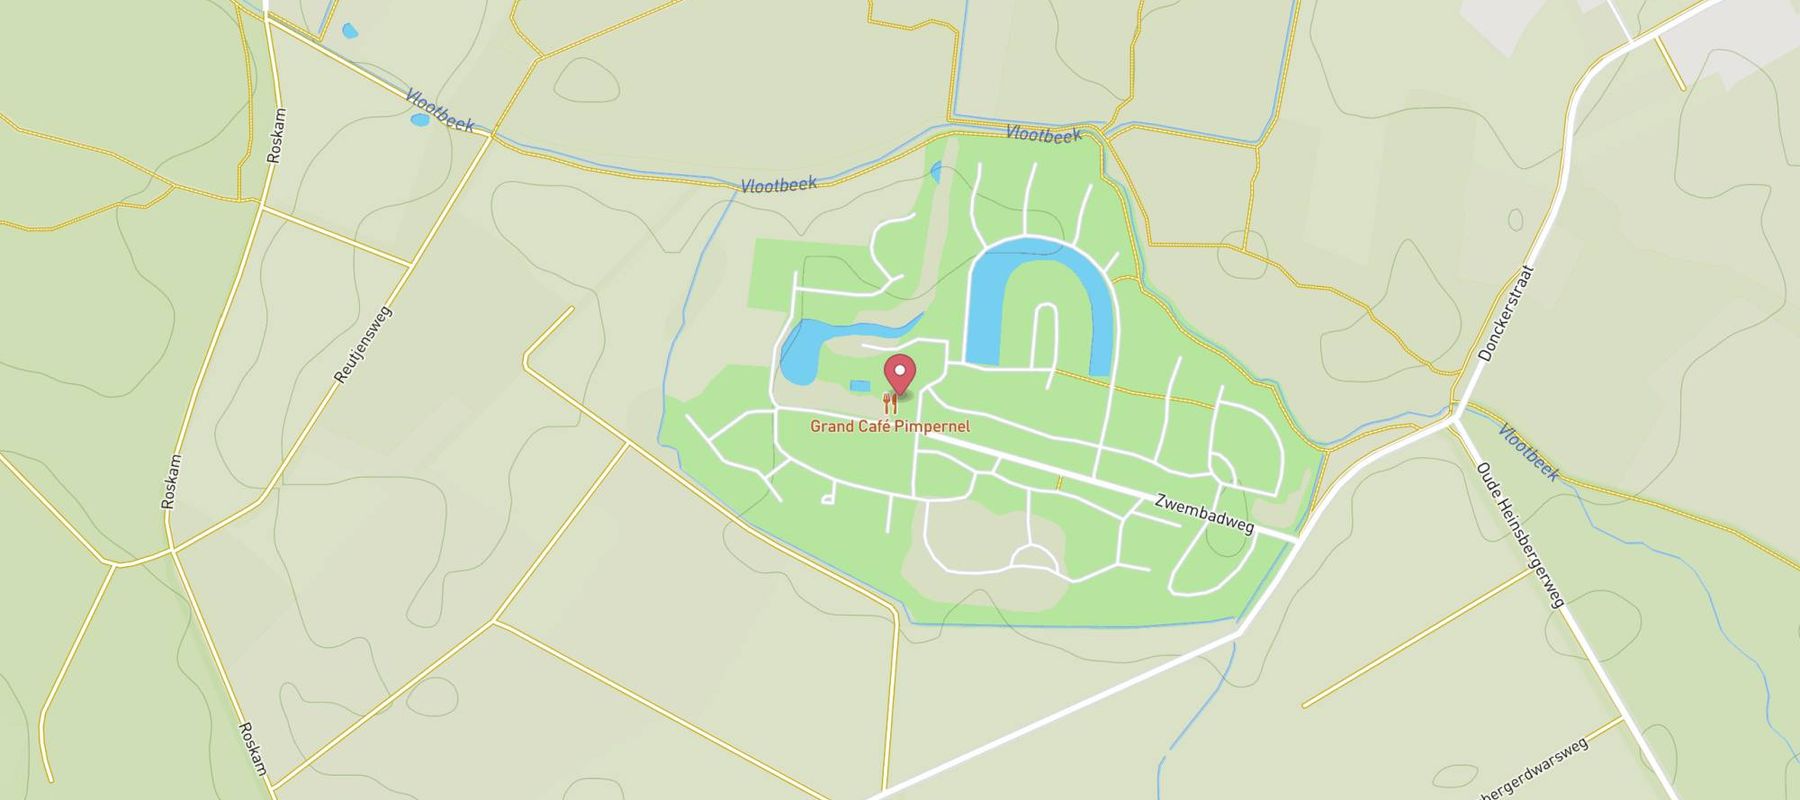 Landal Landgoed Aerwinkel map